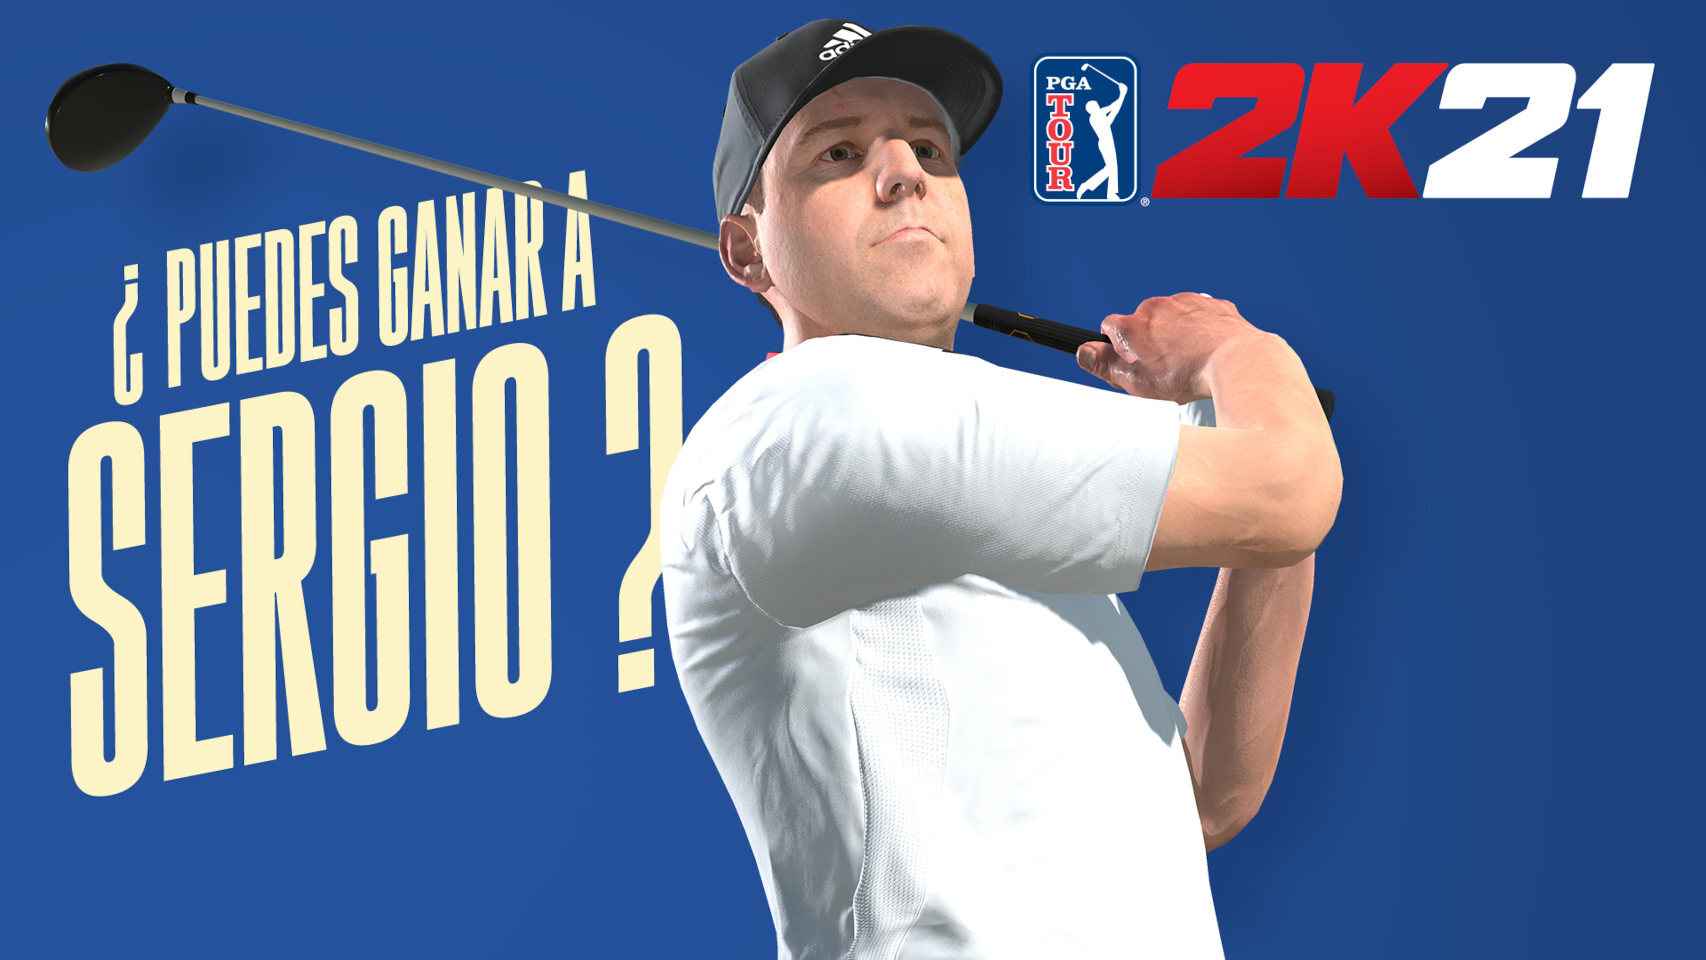 El español Sergio García, en PGA Tour 2K21